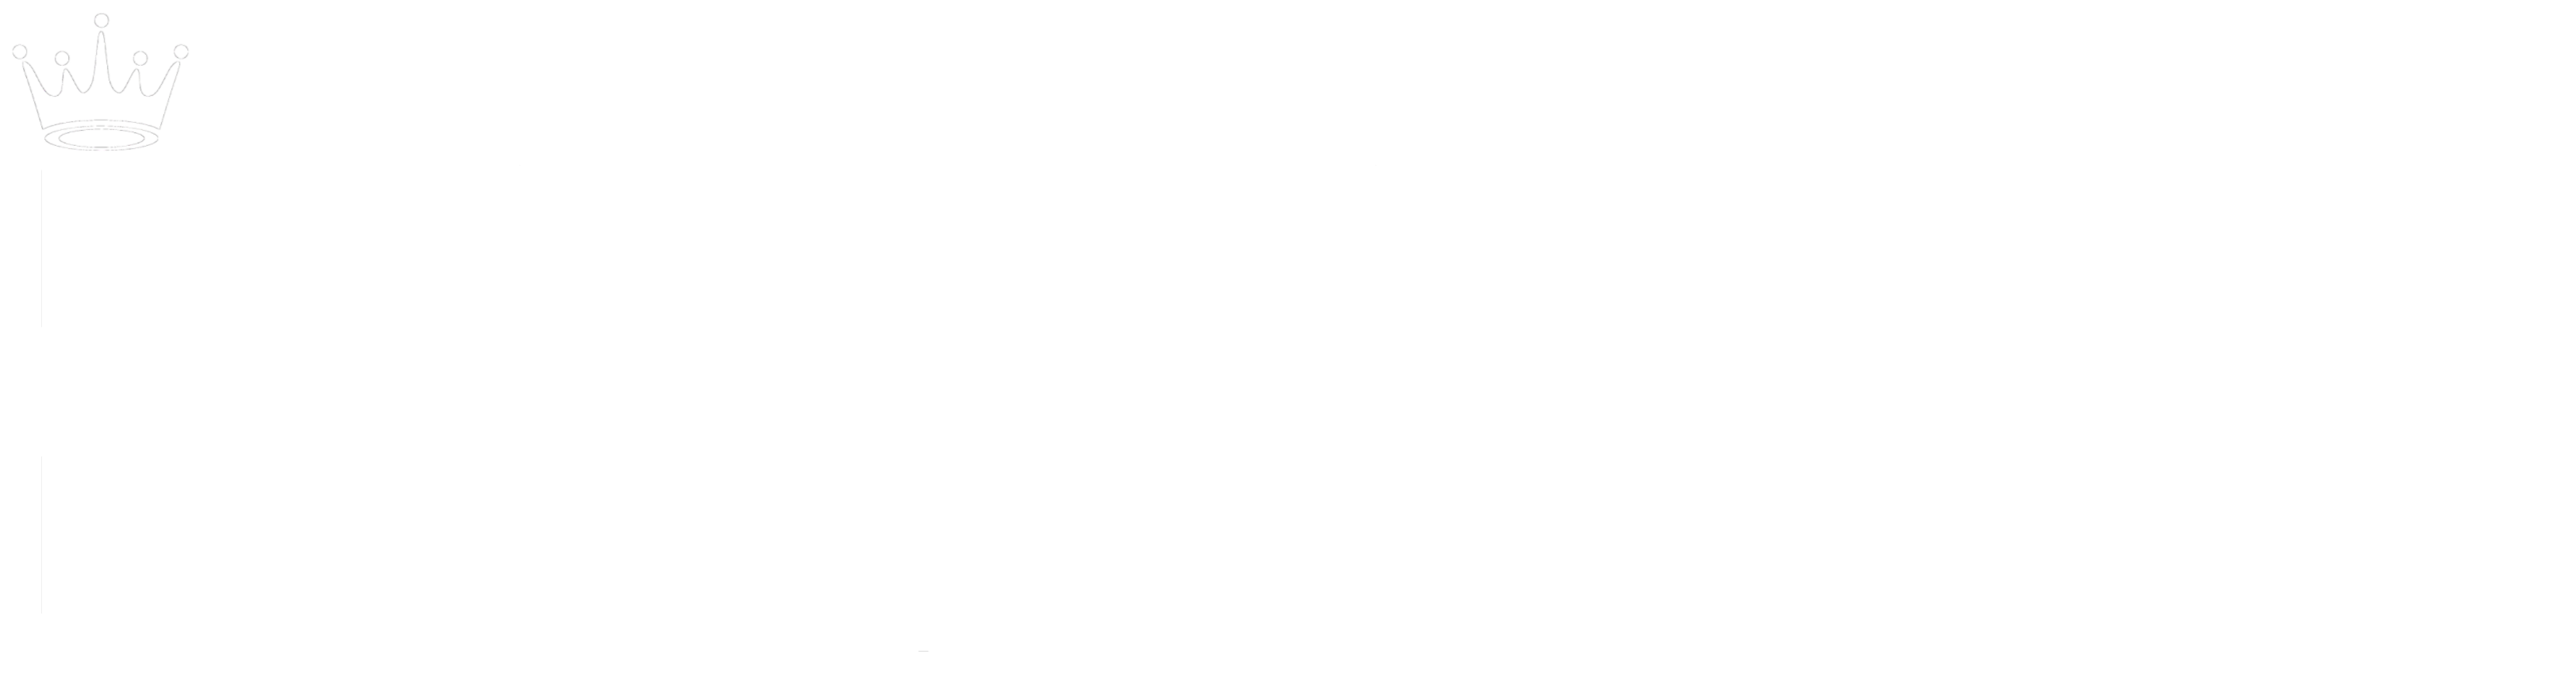 Natali Deus Universe Gallery And NDU Company Logotype